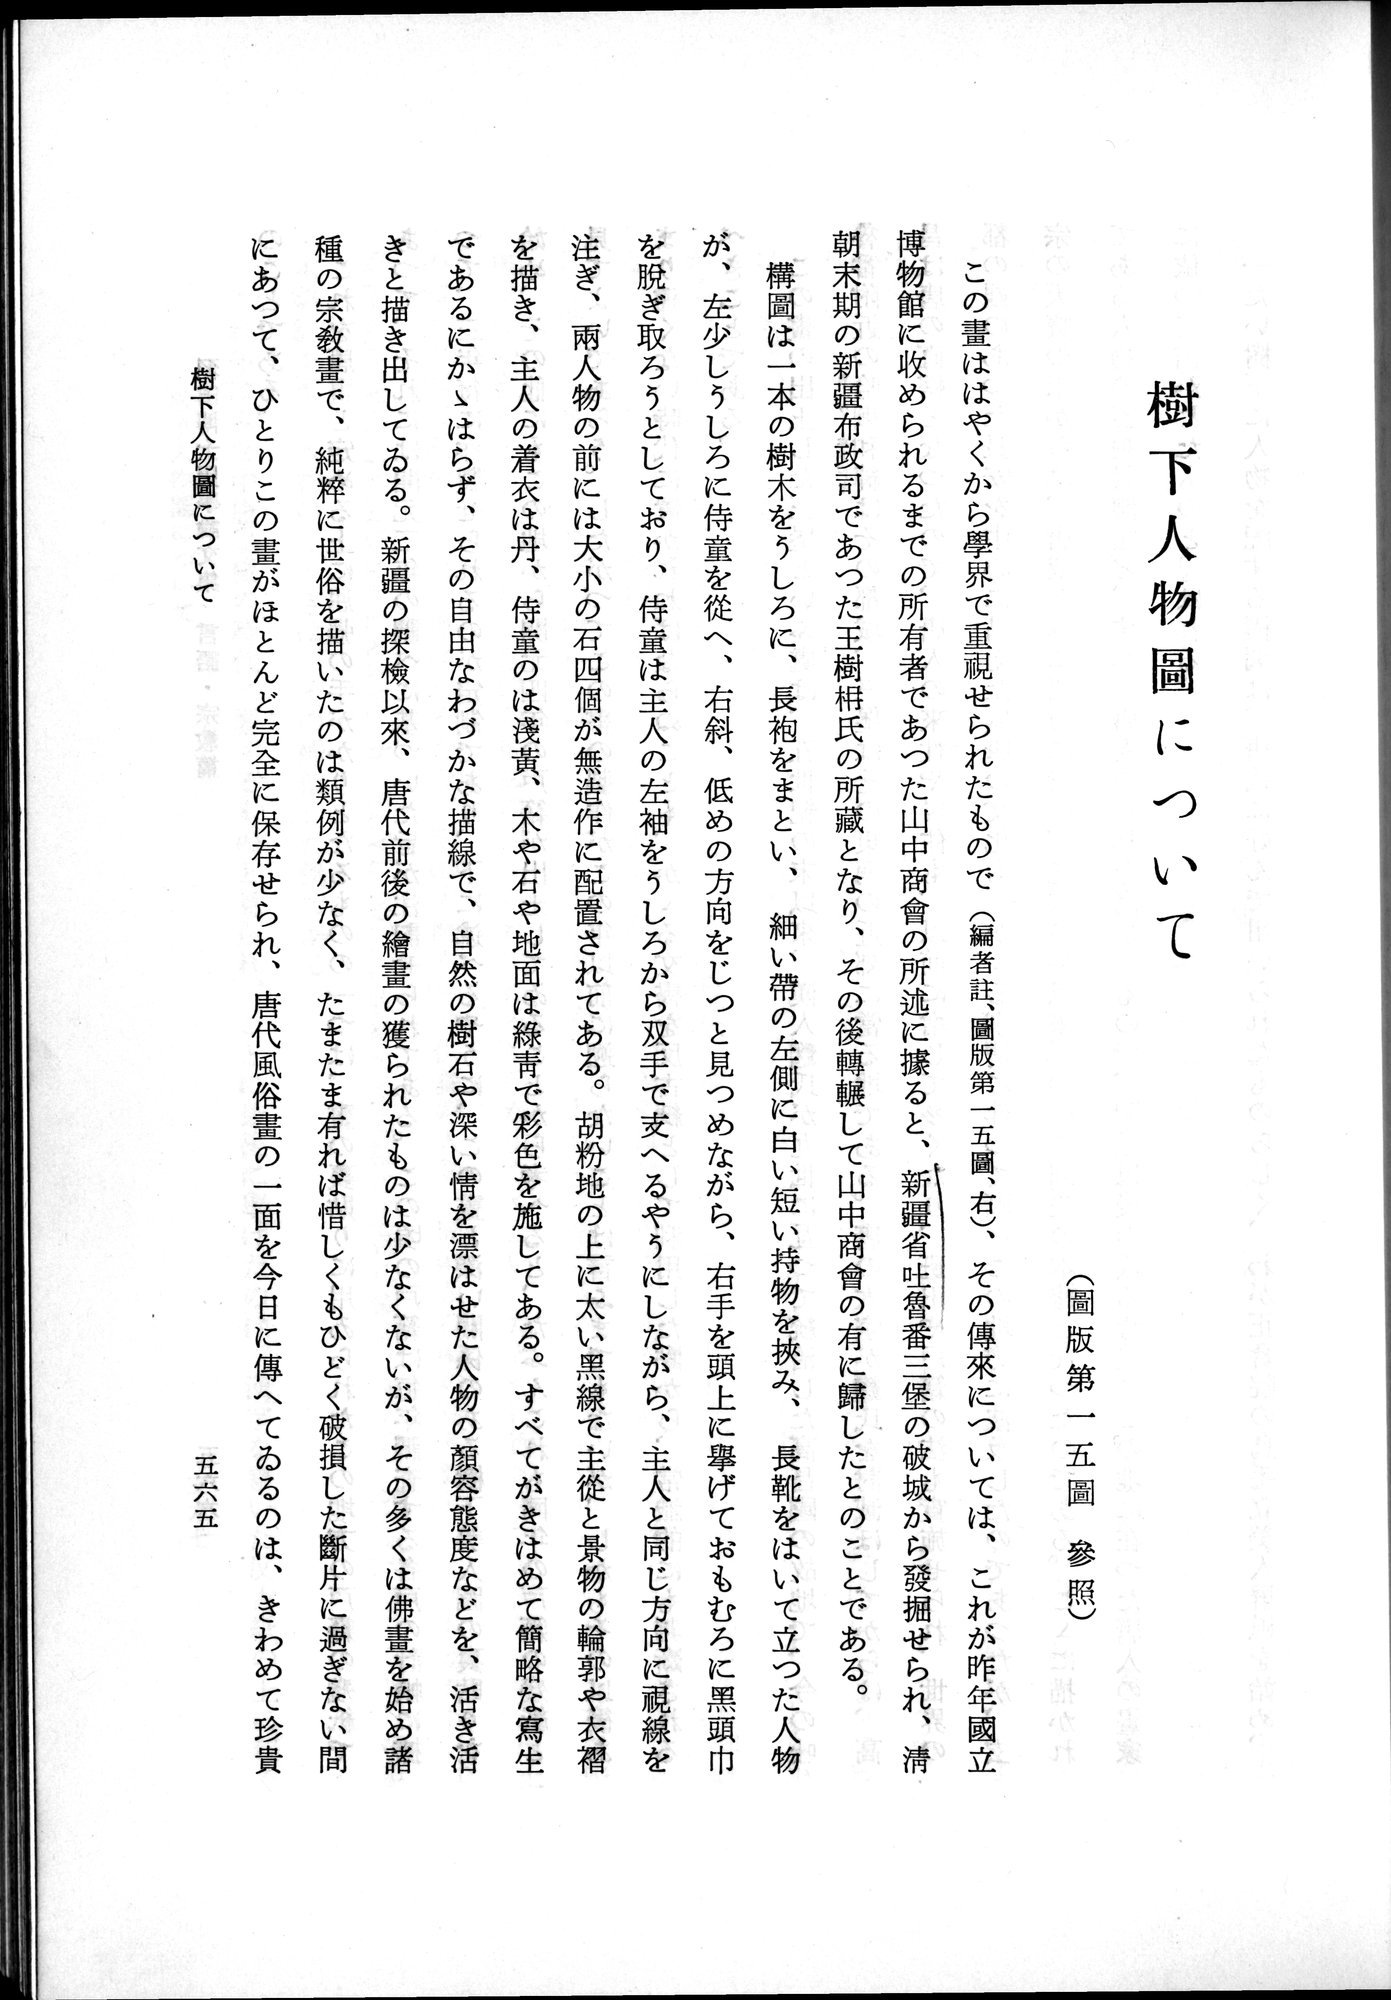 羽田博士史学論文集 : vol.2 / Page 627 (Grayscale High Resolution Image)